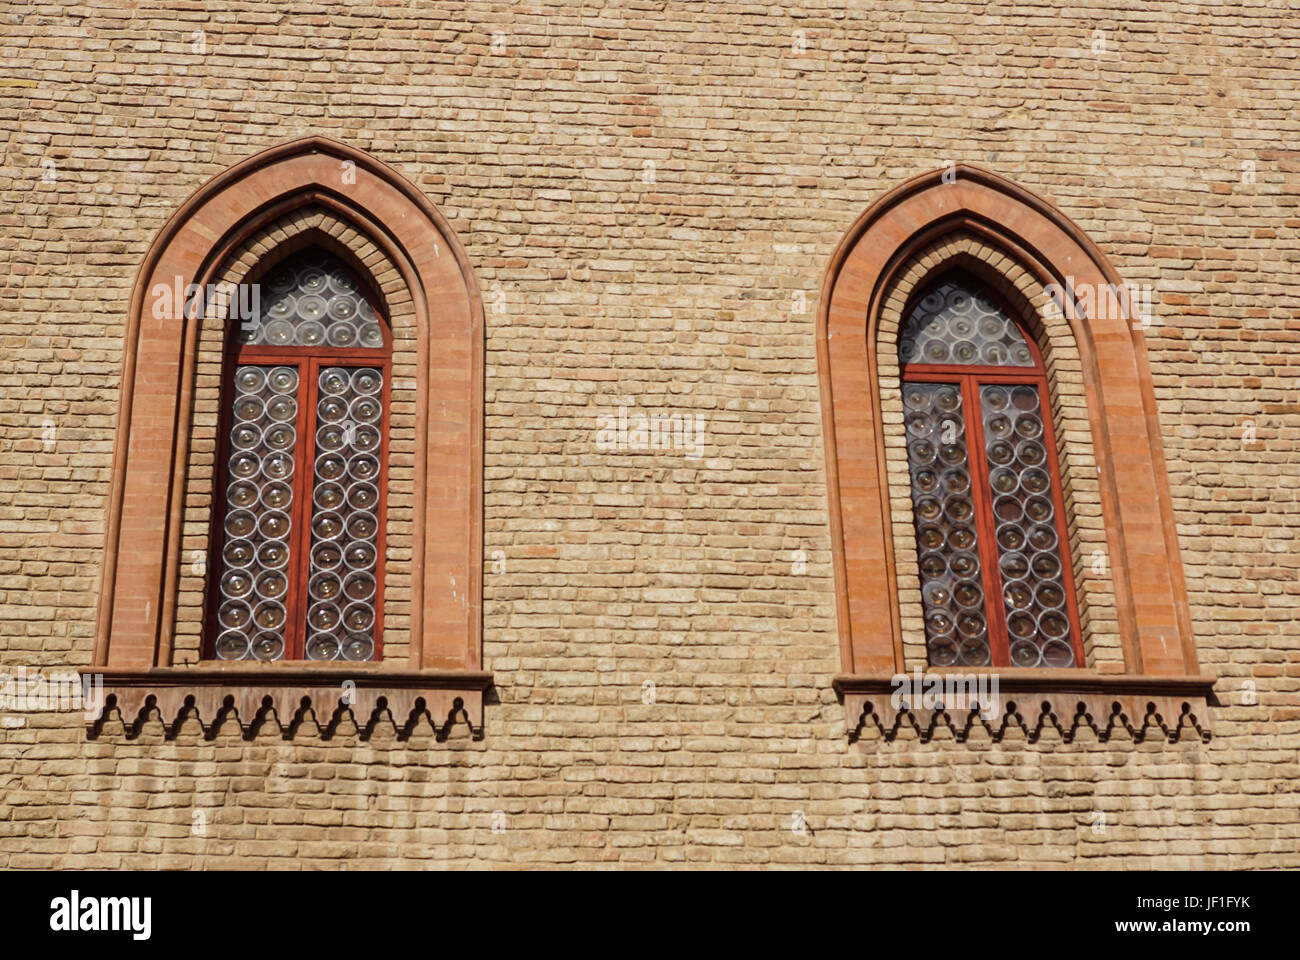 Finestra del castello in stile medievale. Doppia finestra ad arco su una facciata del muro medievale. Biforium - finestra antica con la colonna, vecchia architettura elemento del romano e gotico. Foto Stock